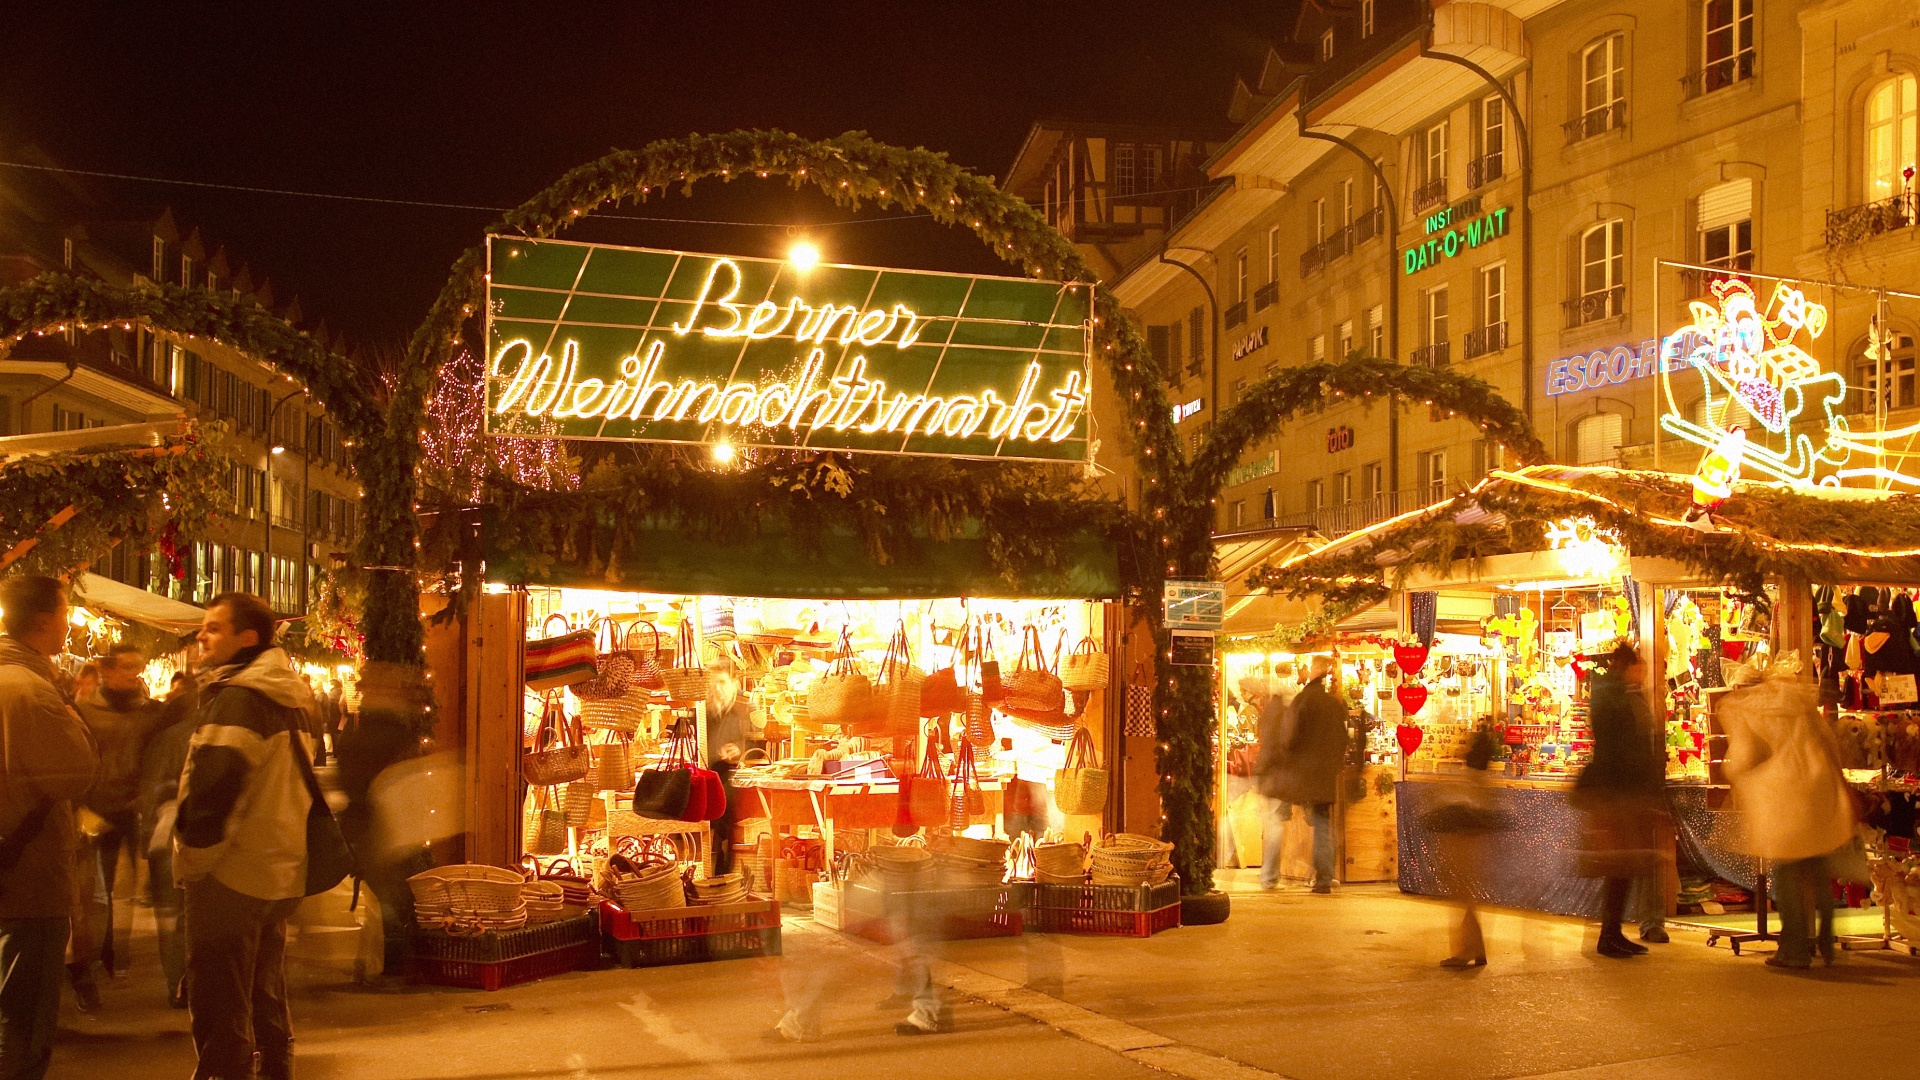 weihnachtsmarkt_waisenhausplatz_01-91fa7606